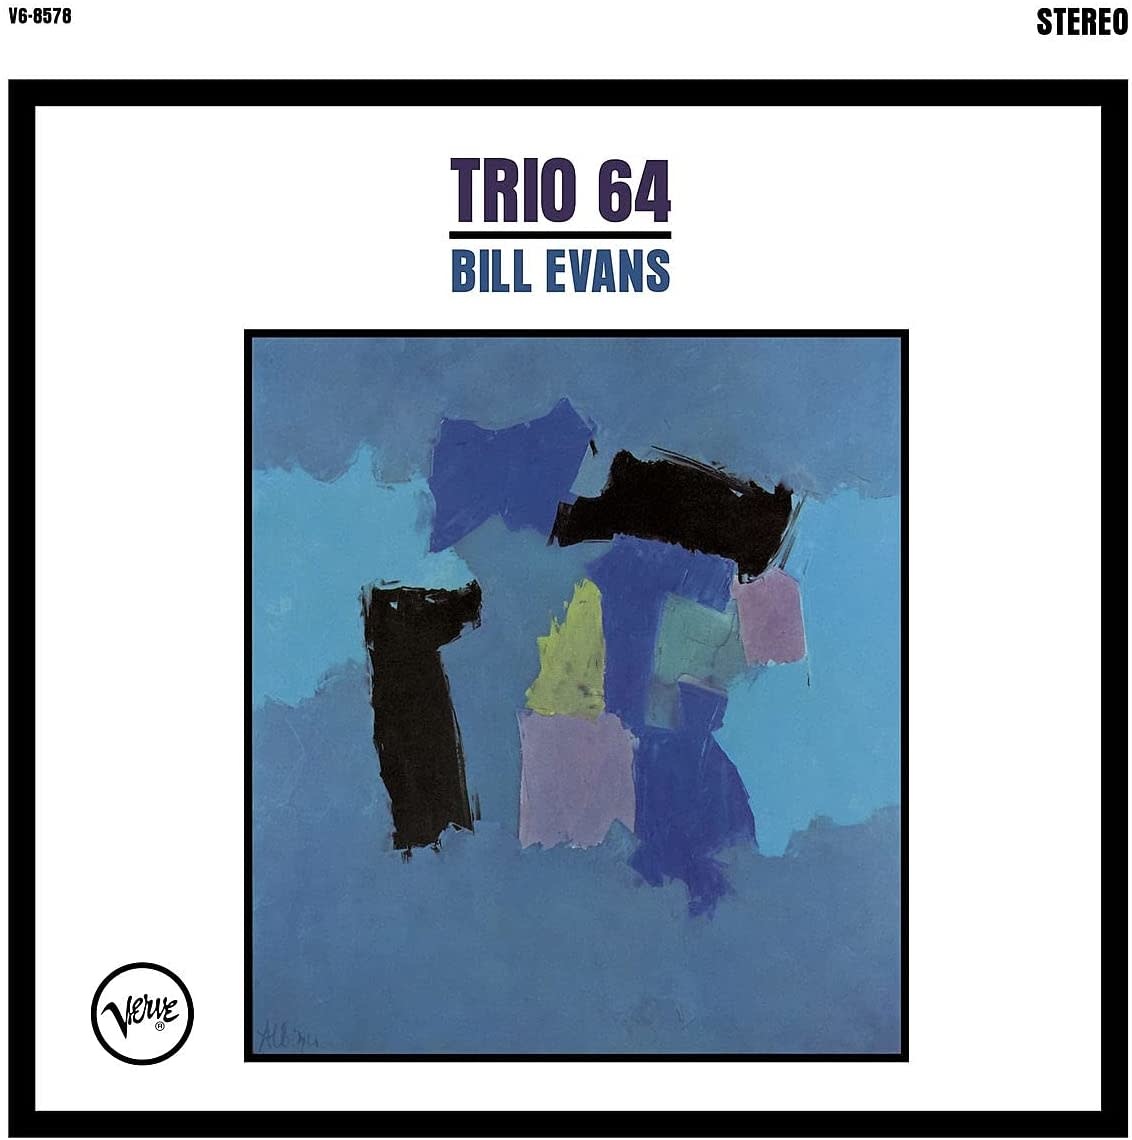 Bill Evans - Trio 64 (Acoustic Sounds Series) [Vinyl]